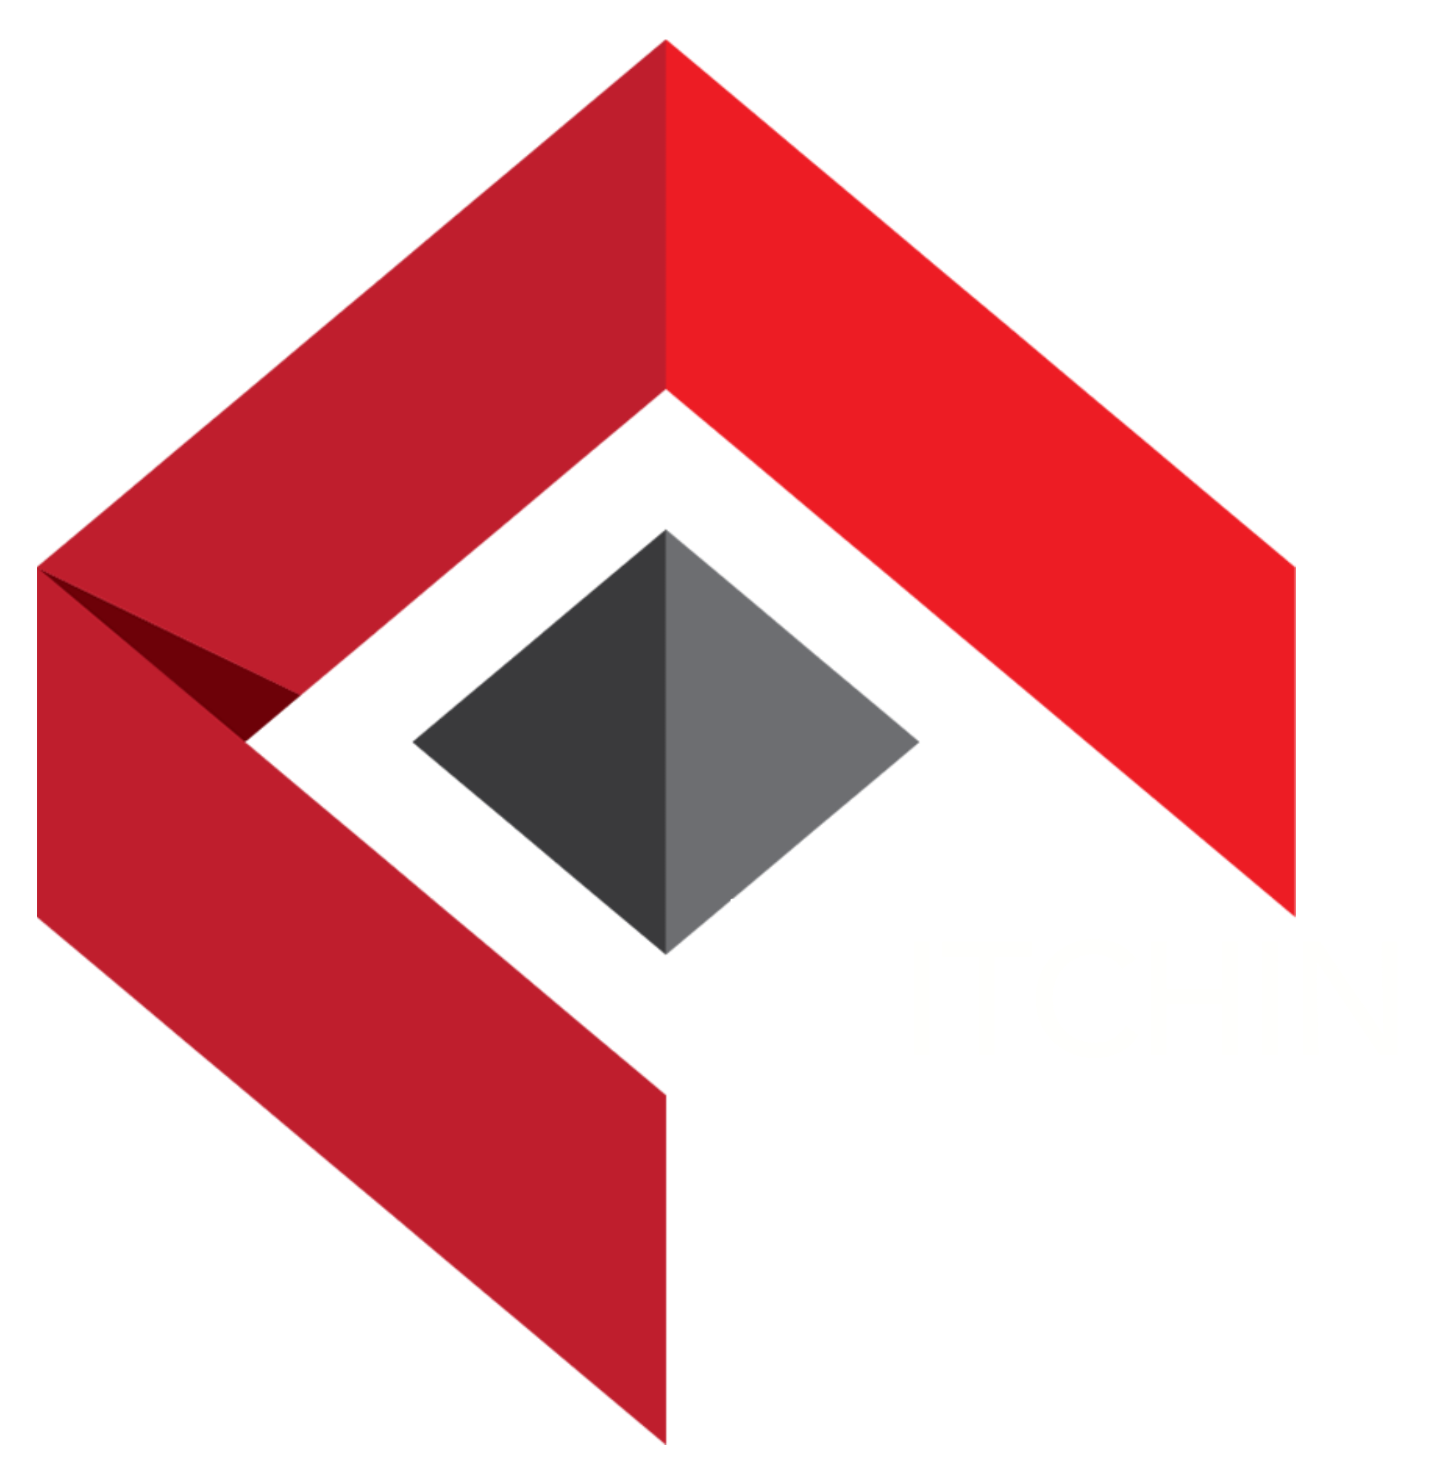 Kitchin FX